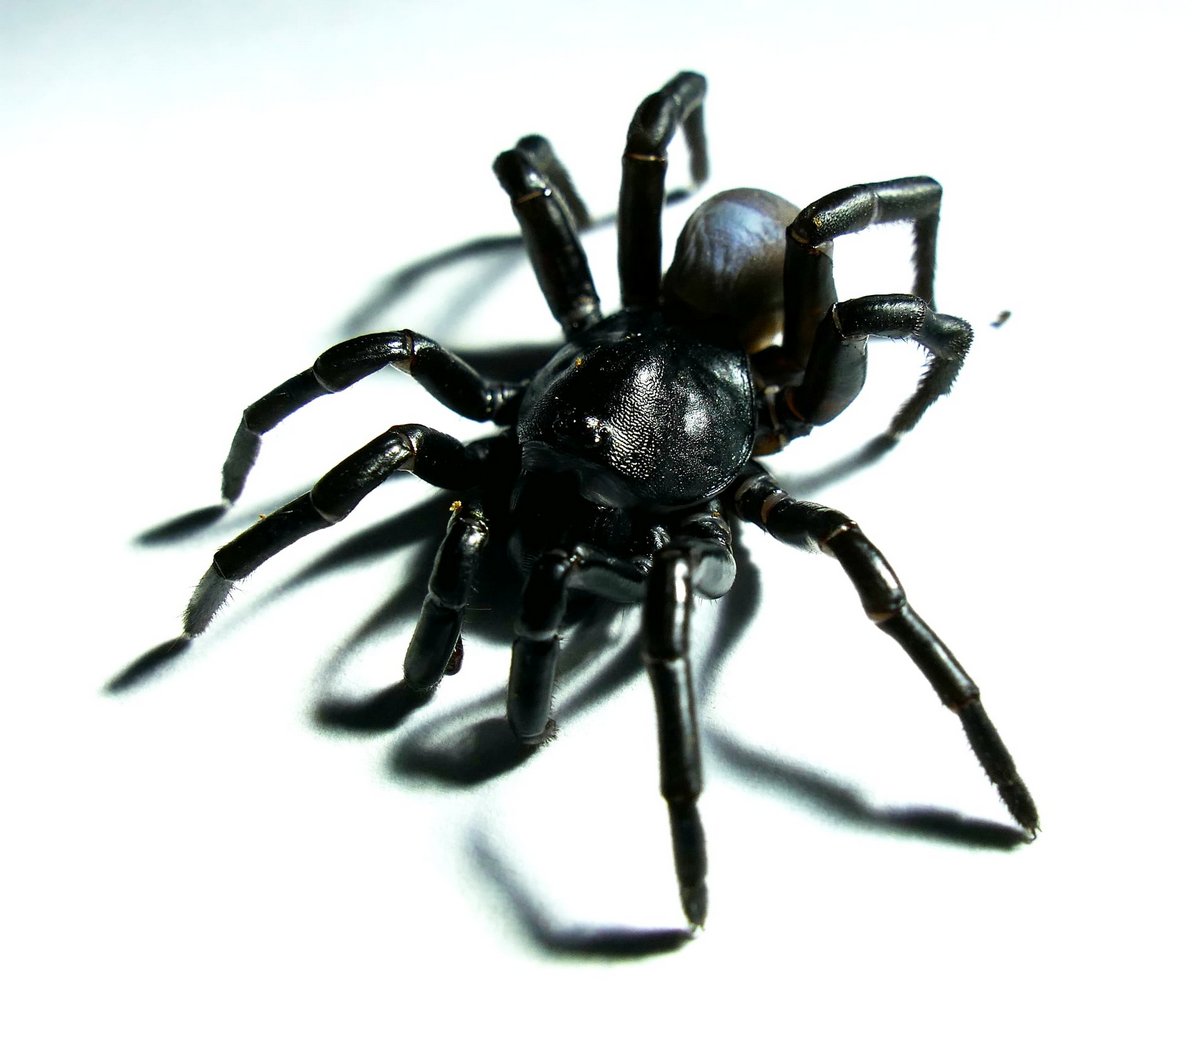 Cette nouvelle espèce d’araignée venimeuse qui ressemble à une tarentule peut vivre pendant des décennies